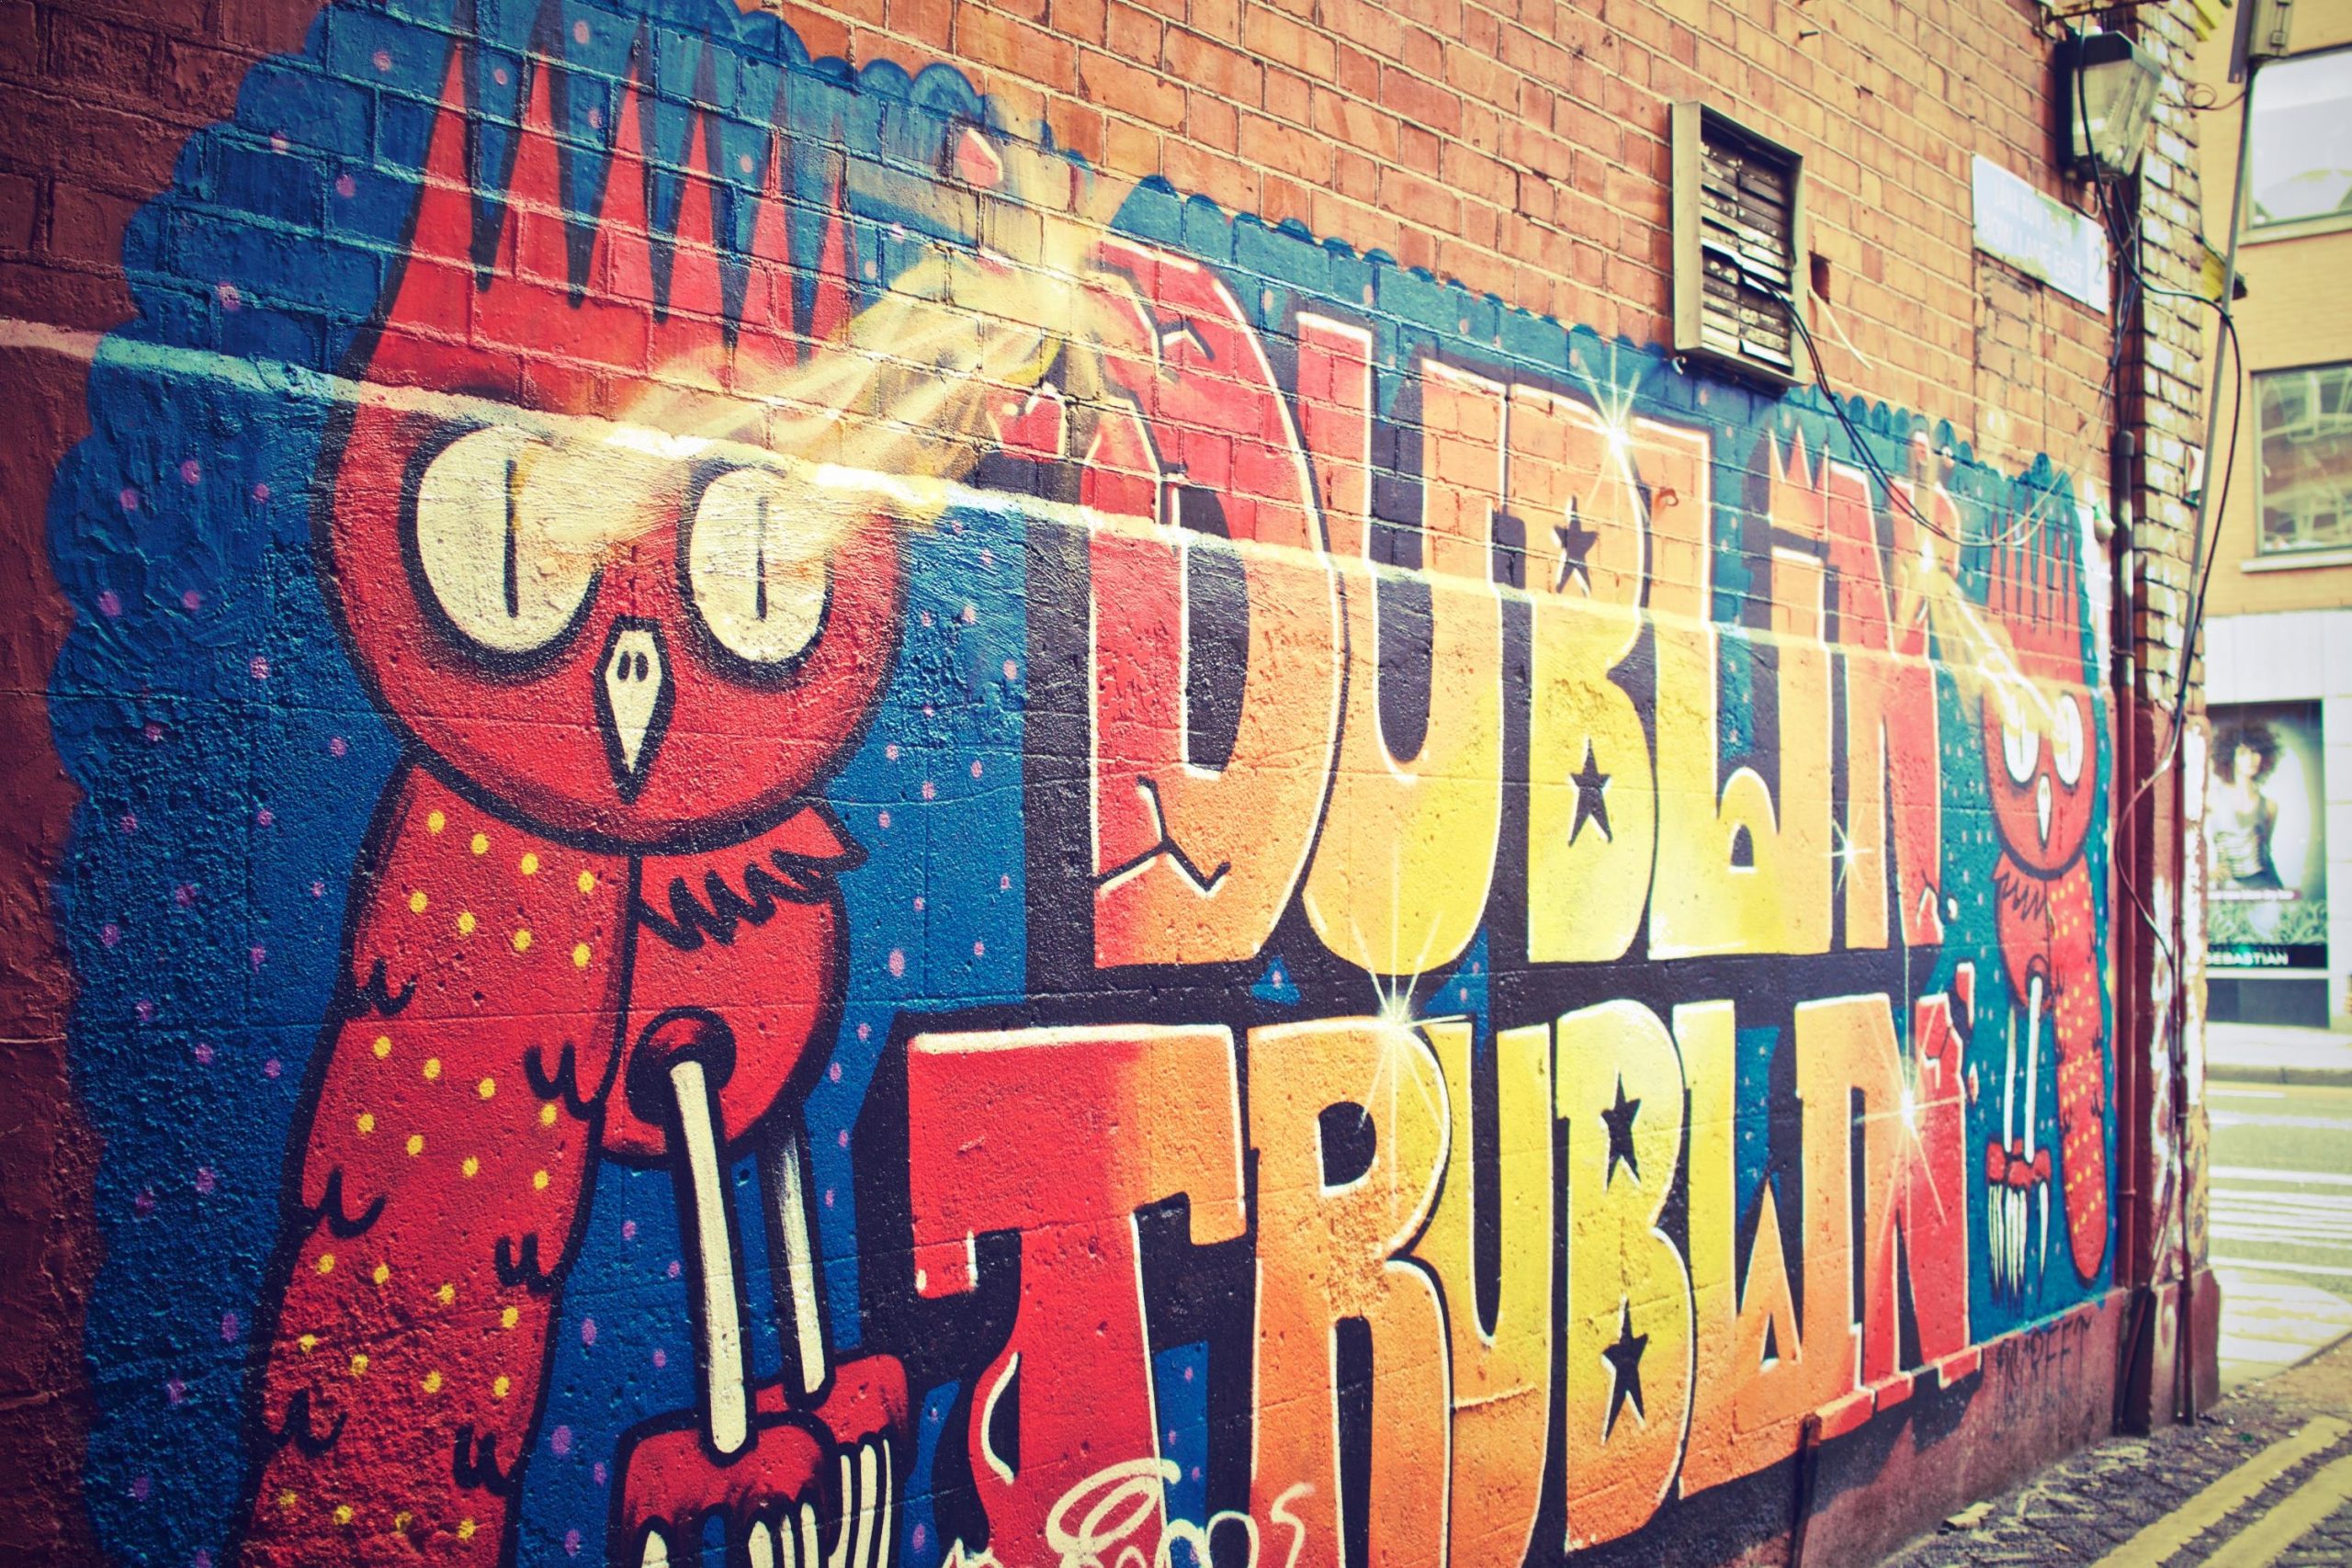 Dublin Ireland Graffiti Wall